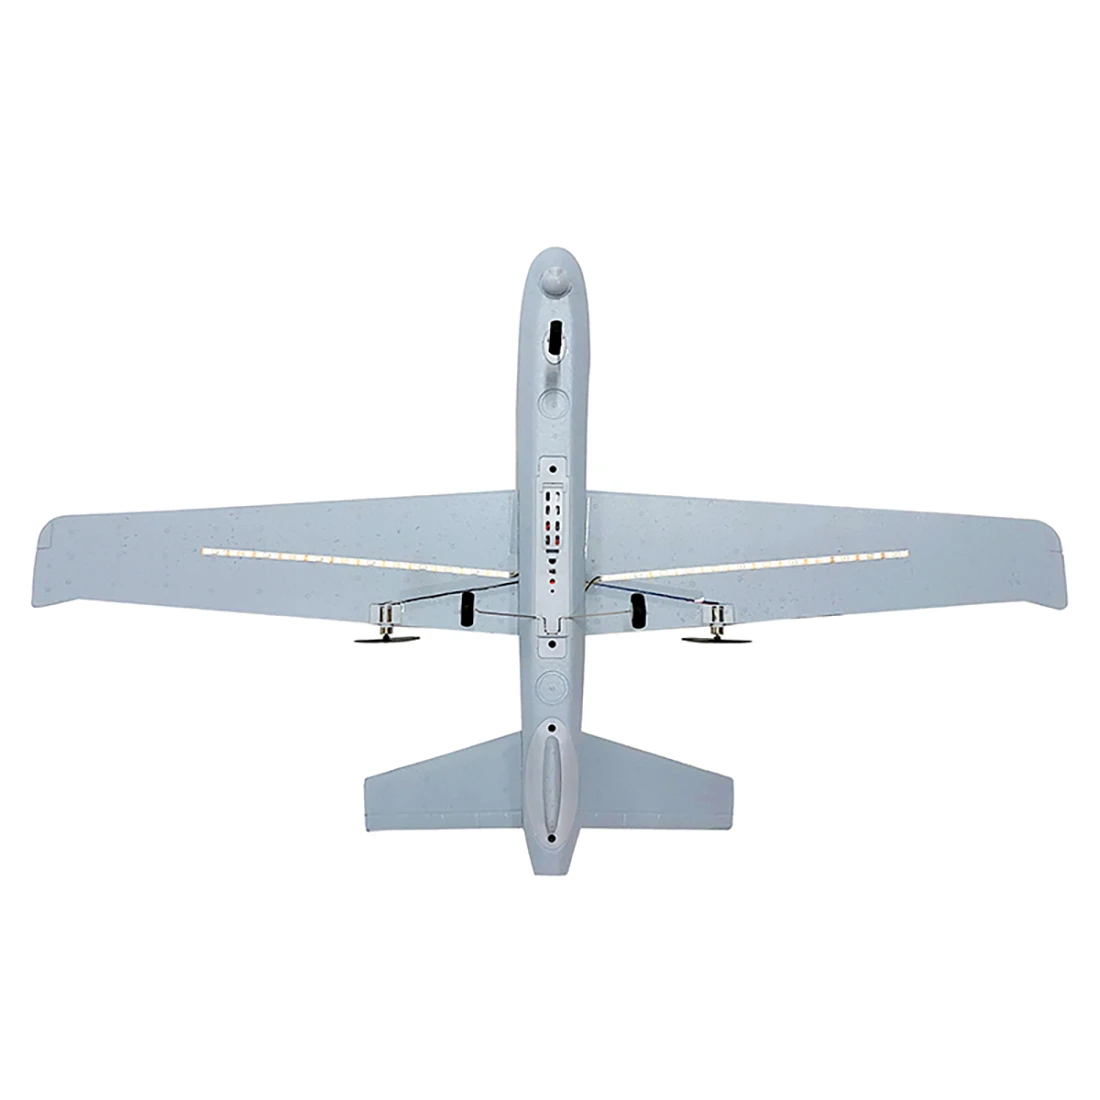 Z51 2,4G 3CH RC Самолет без камеры 20 минут флигт время планеры светодиодный ручной метание размах крыльев пена летающий самолет детские игрушки